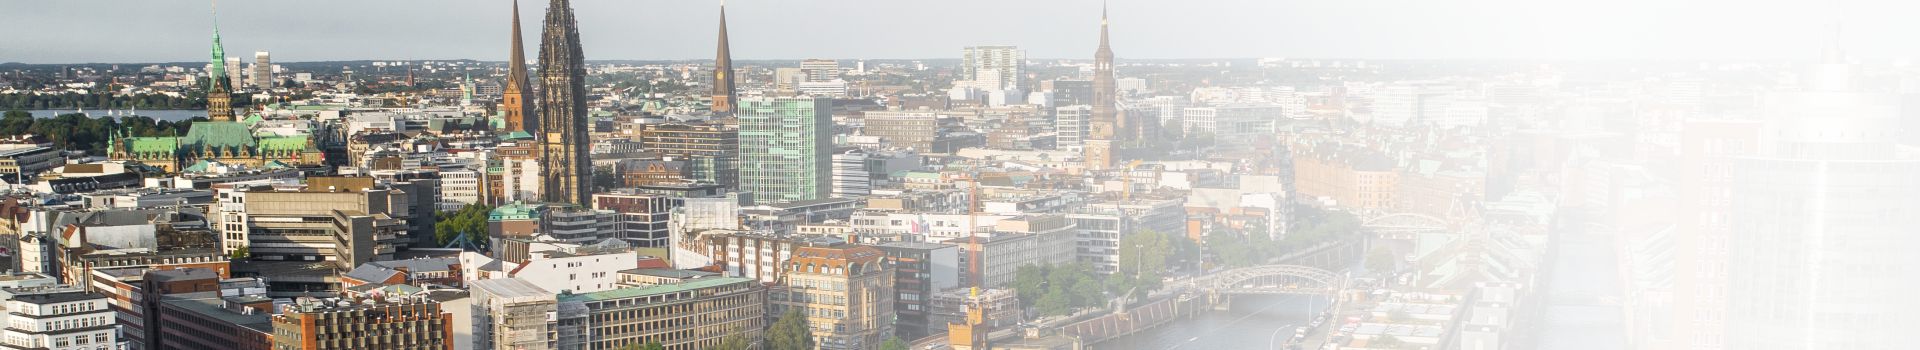 Die Hansastadt Hamburg in einer Luftbildaufnahme. Hier passieren am tag viele Autounfälle.